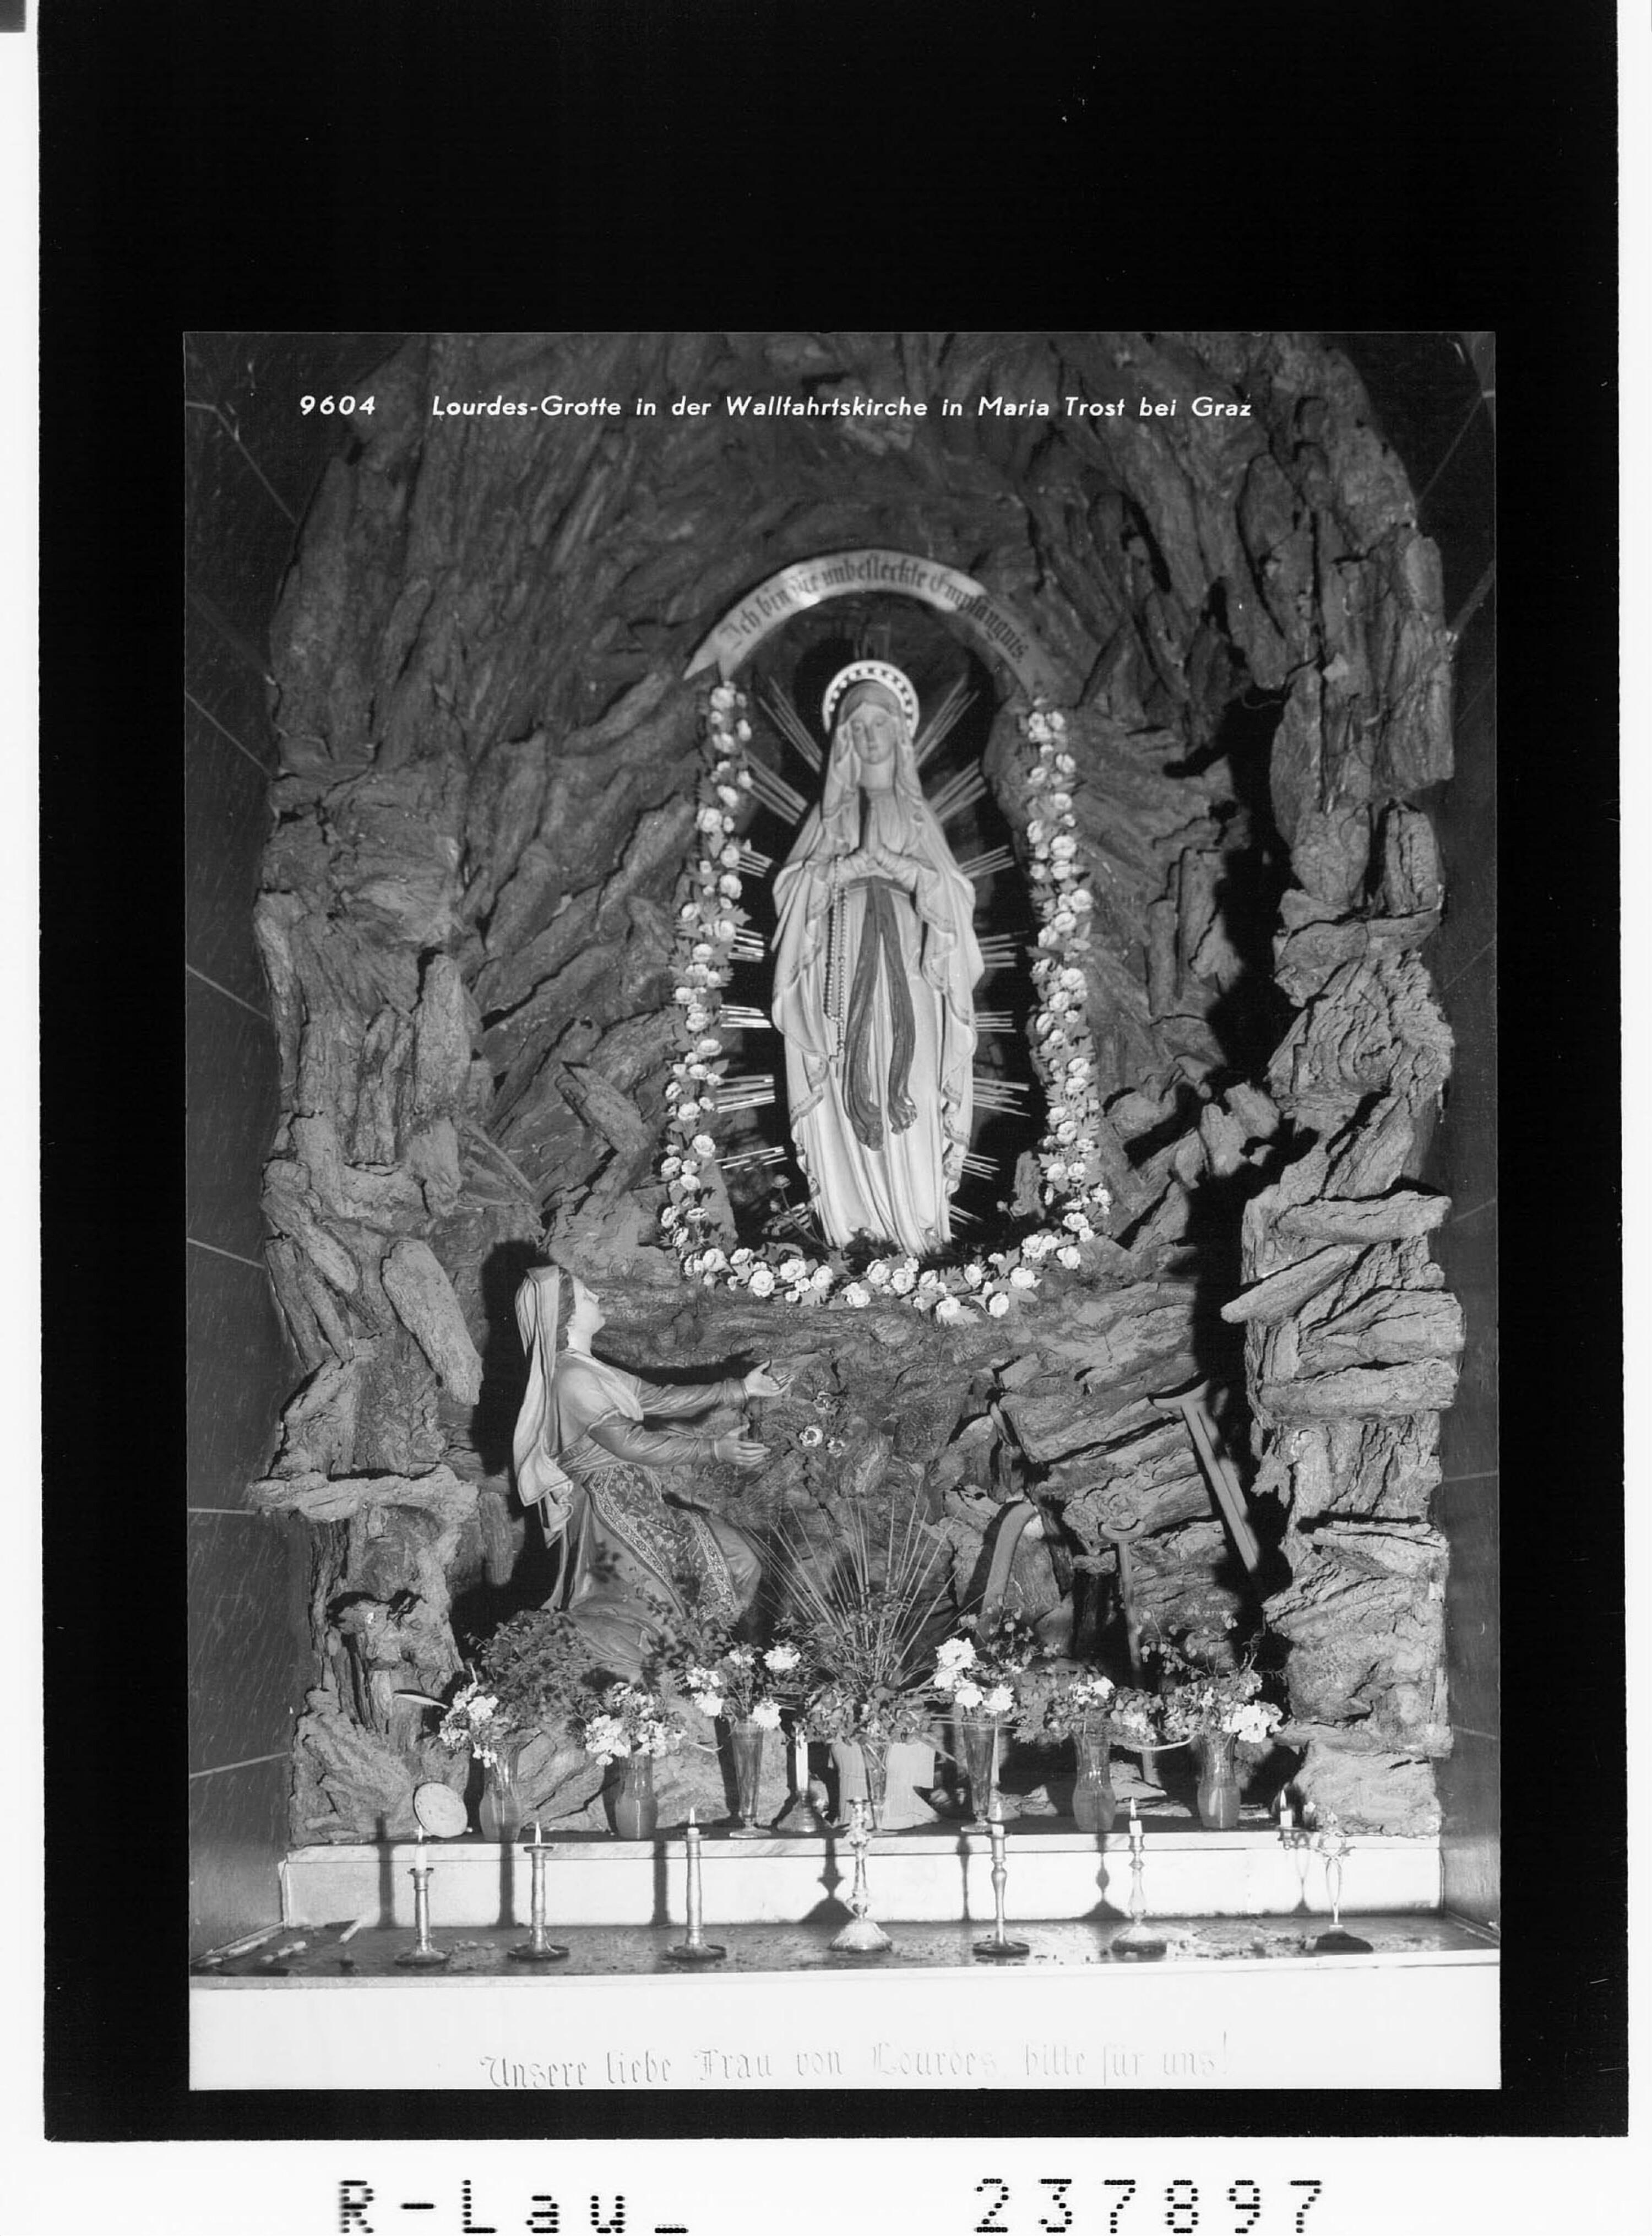 Lourdes-Grotte in der Wallfahrtskirche in Maria Trost bei Graz></div>


    <hr>
    <div class=